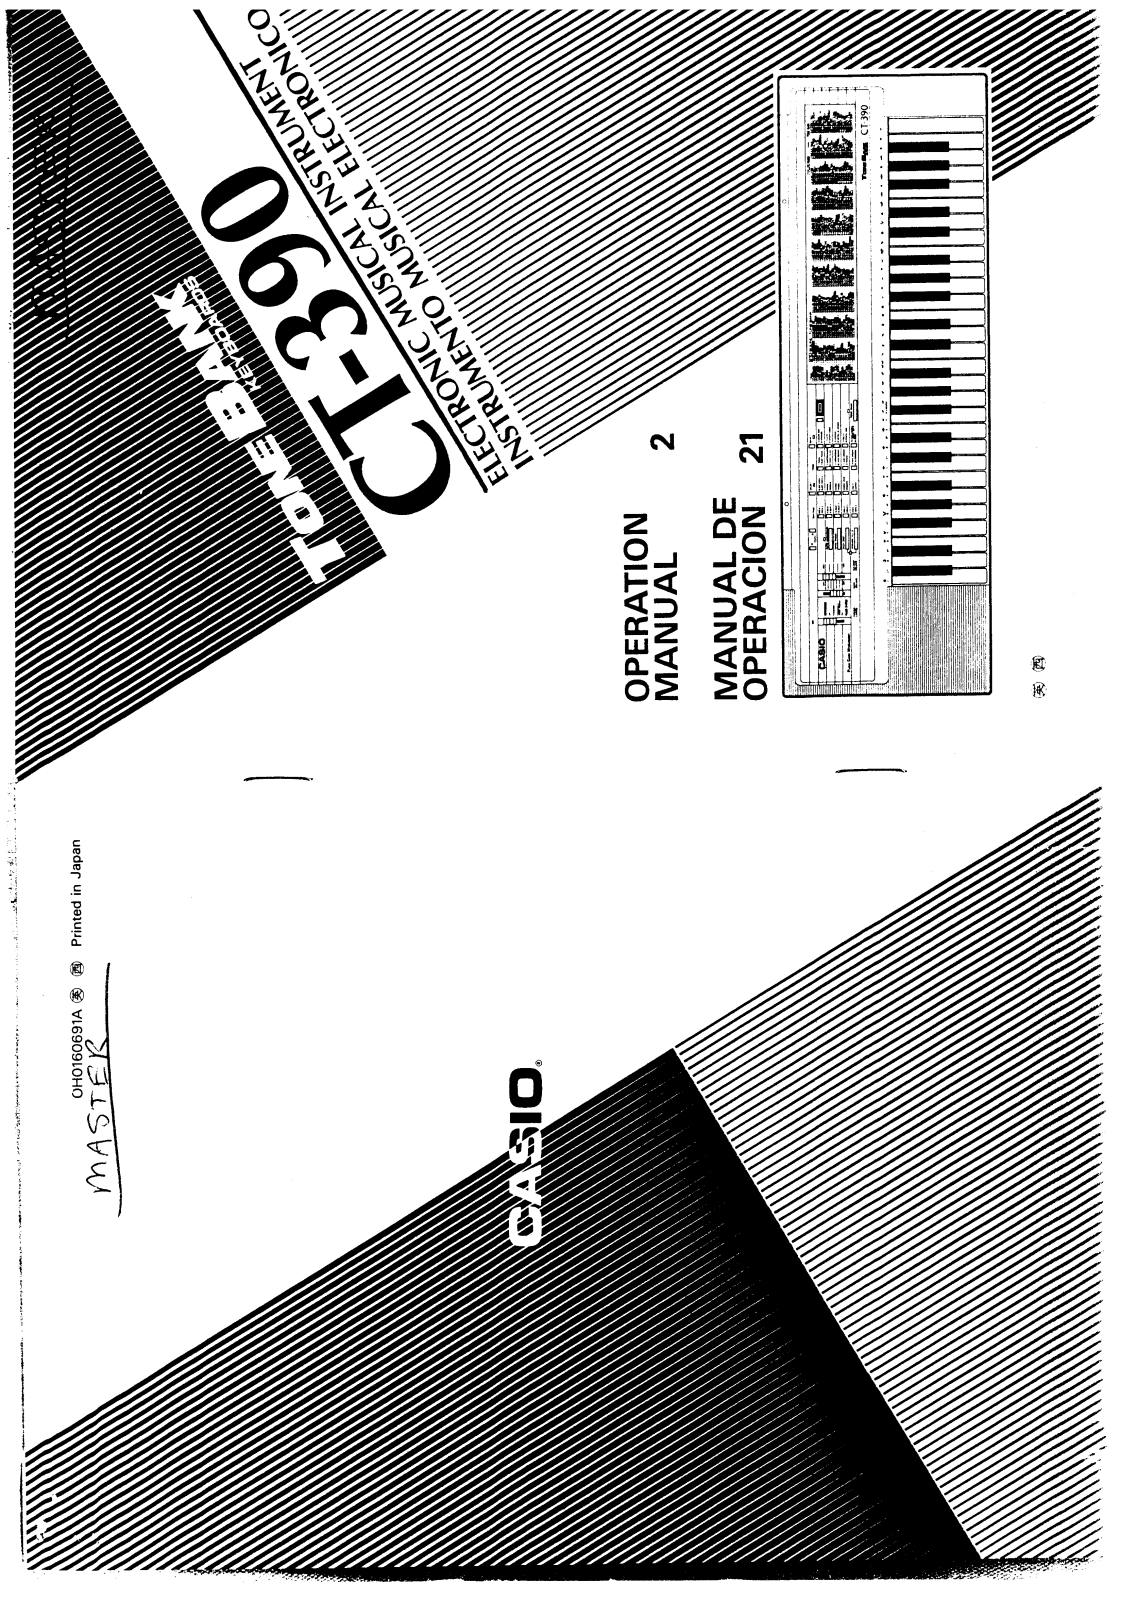 Casio CT-390 User Manual